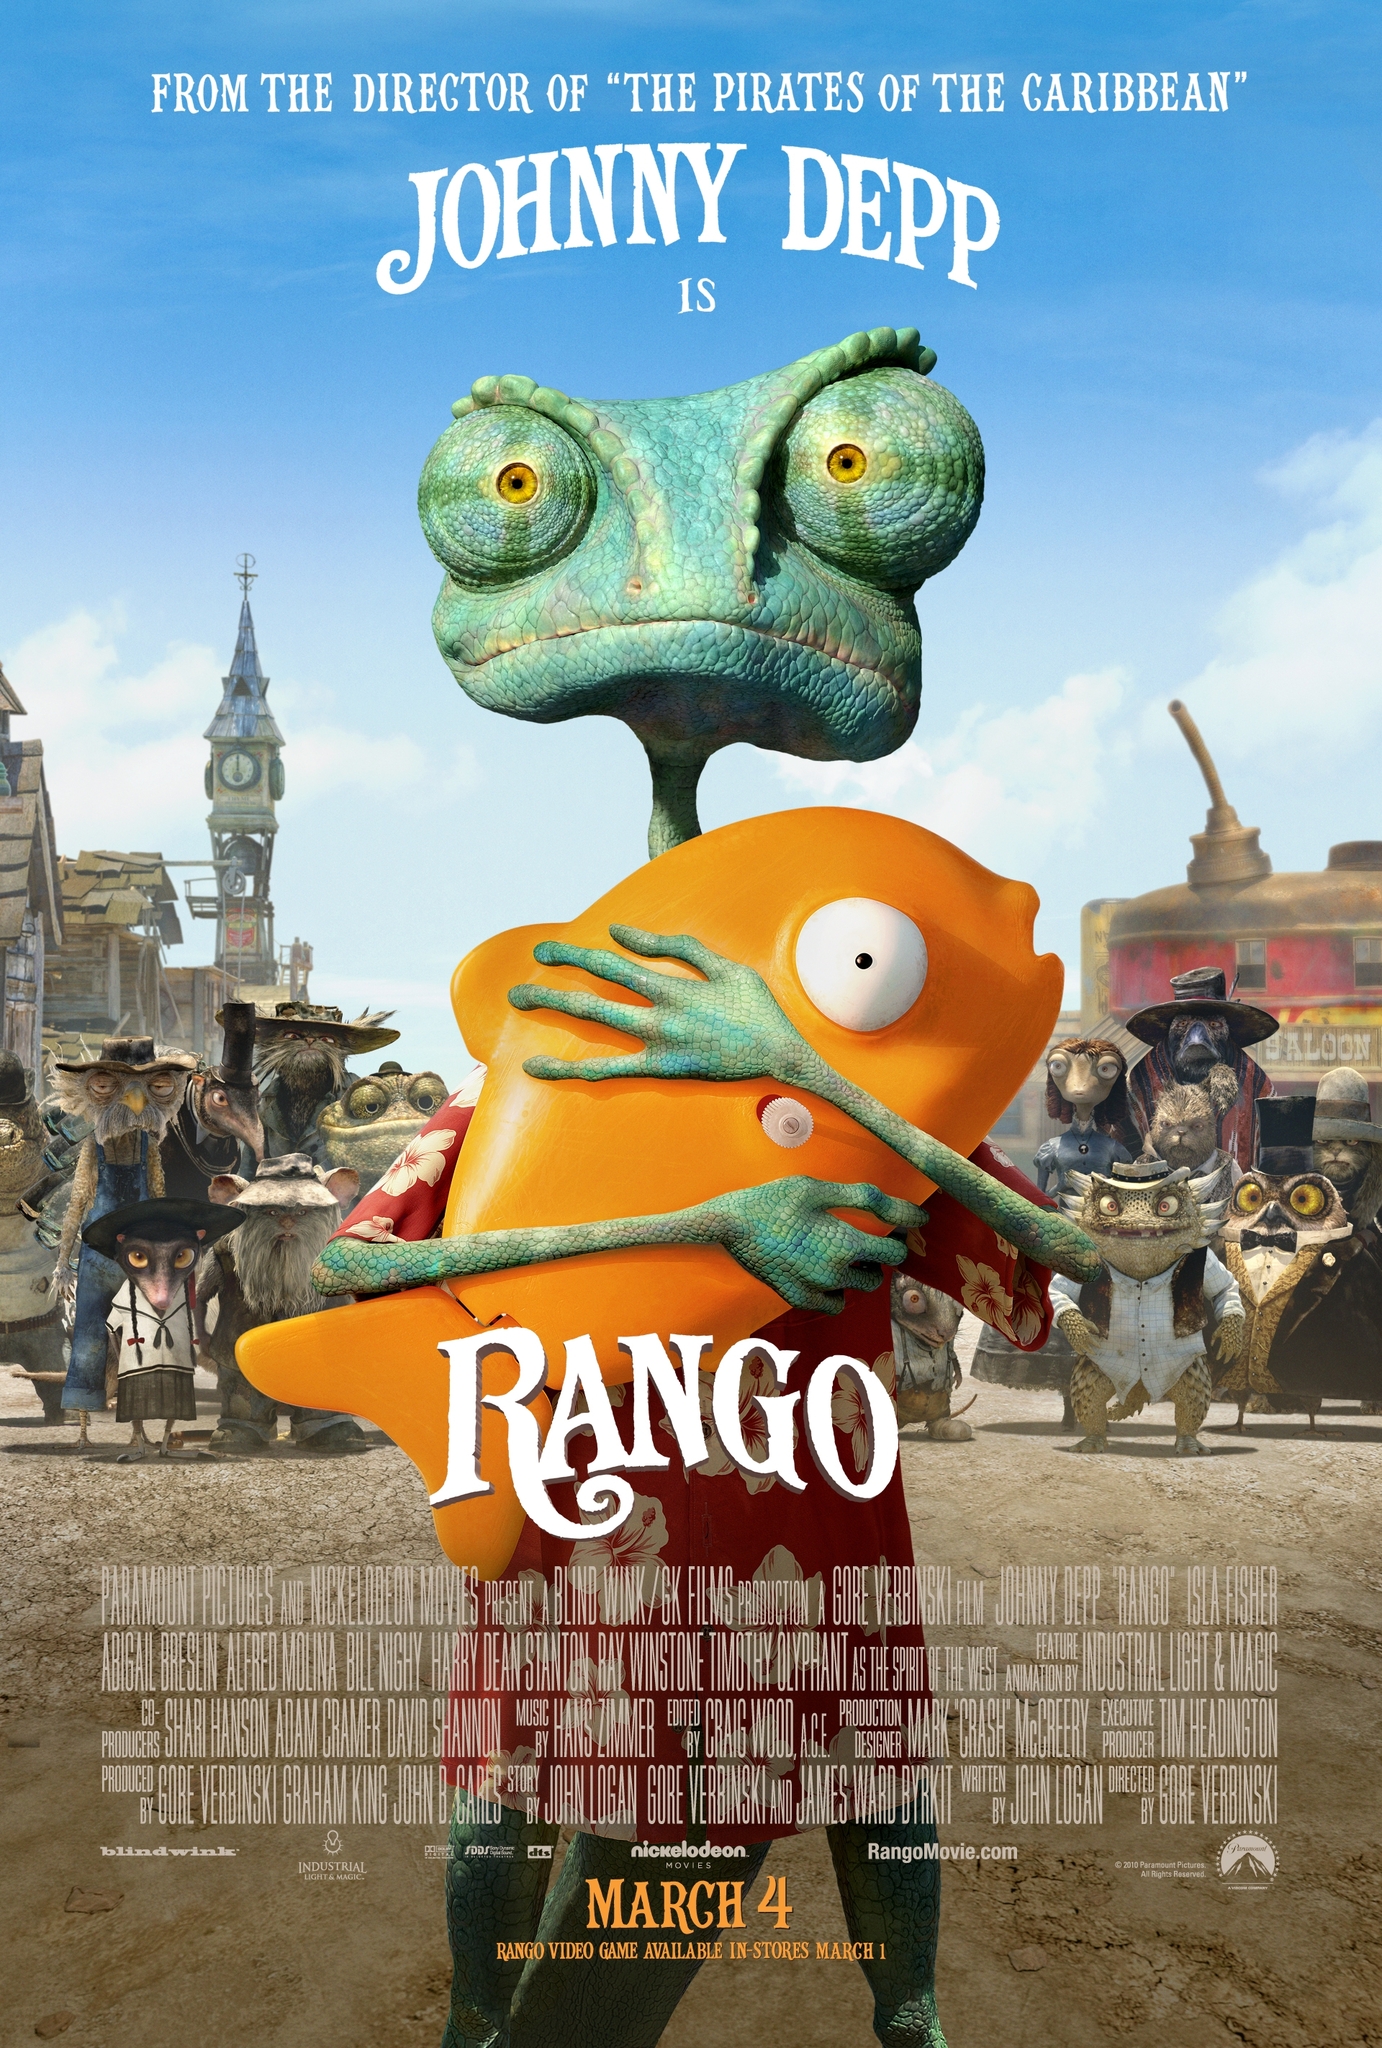 Rango (2011) แรงโก้ ฮีโร่ทะเลทราย Johnny Depp